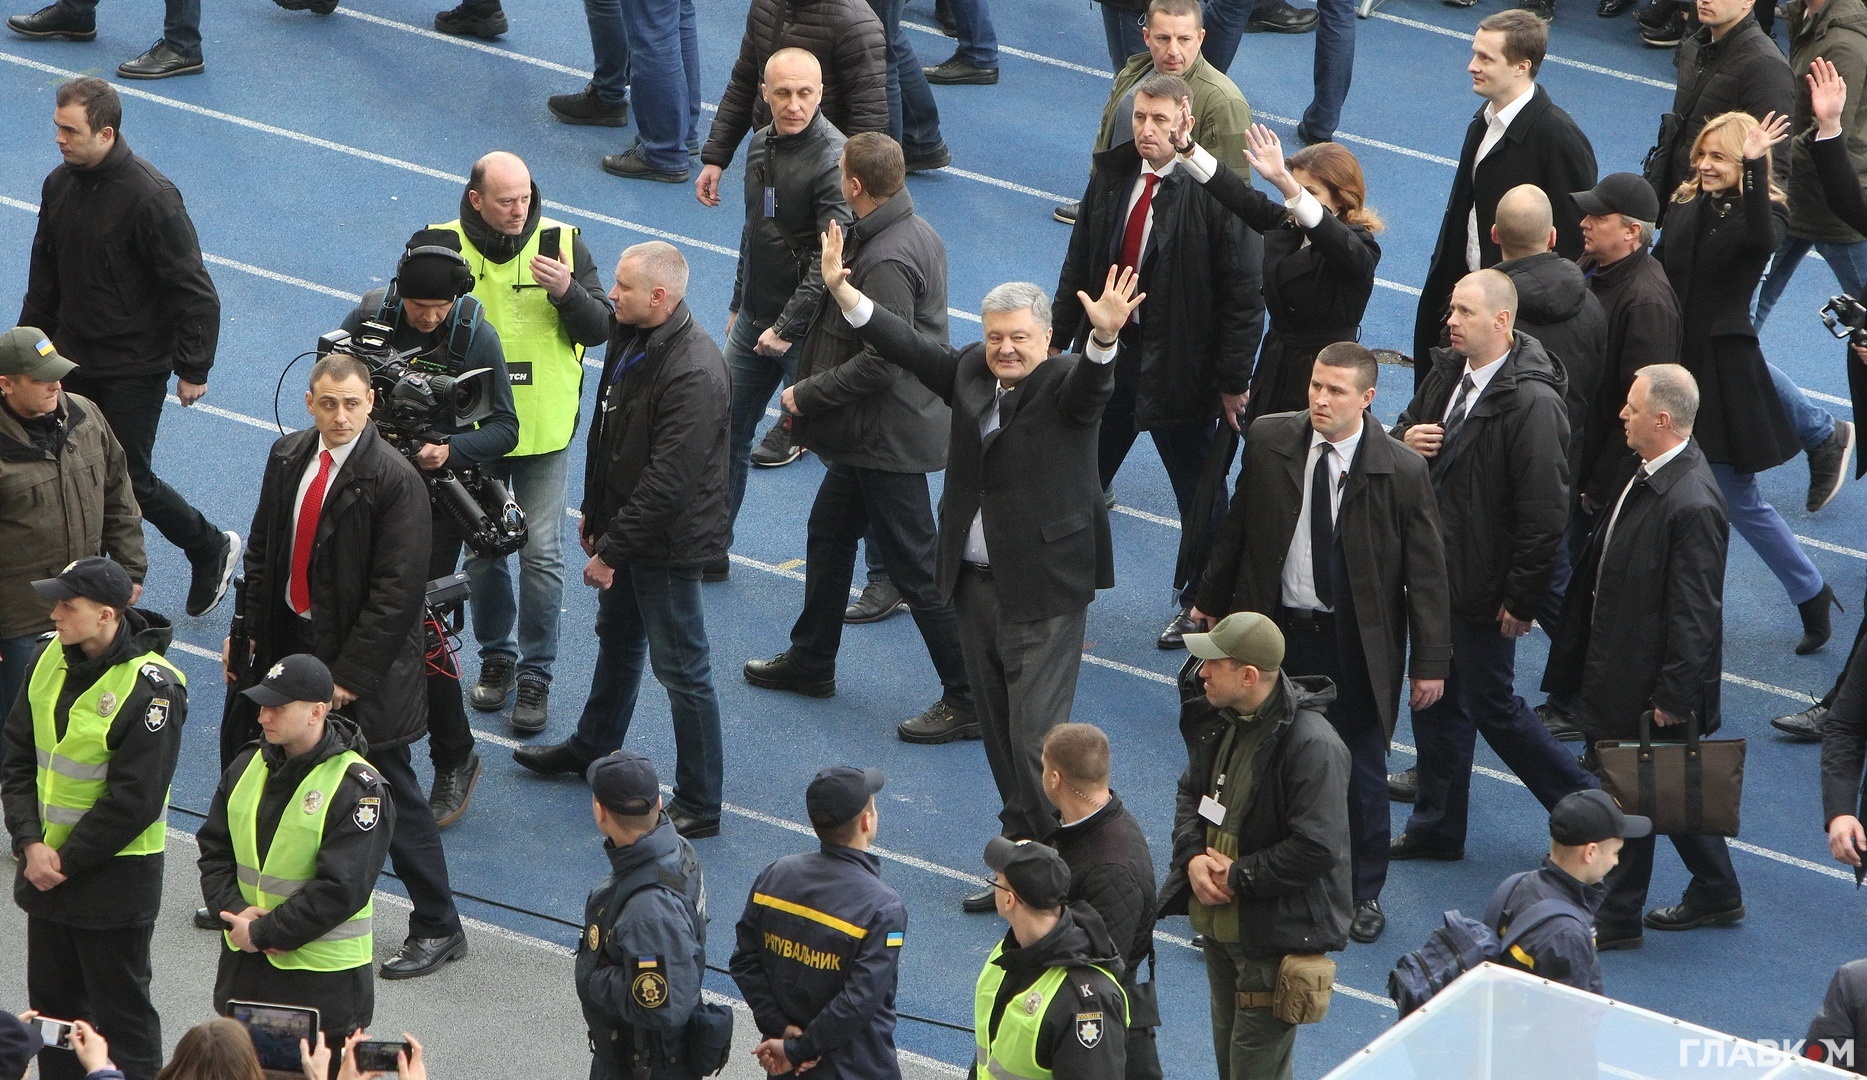 Петро Порошенко з родиною пройшов через весь стадіон